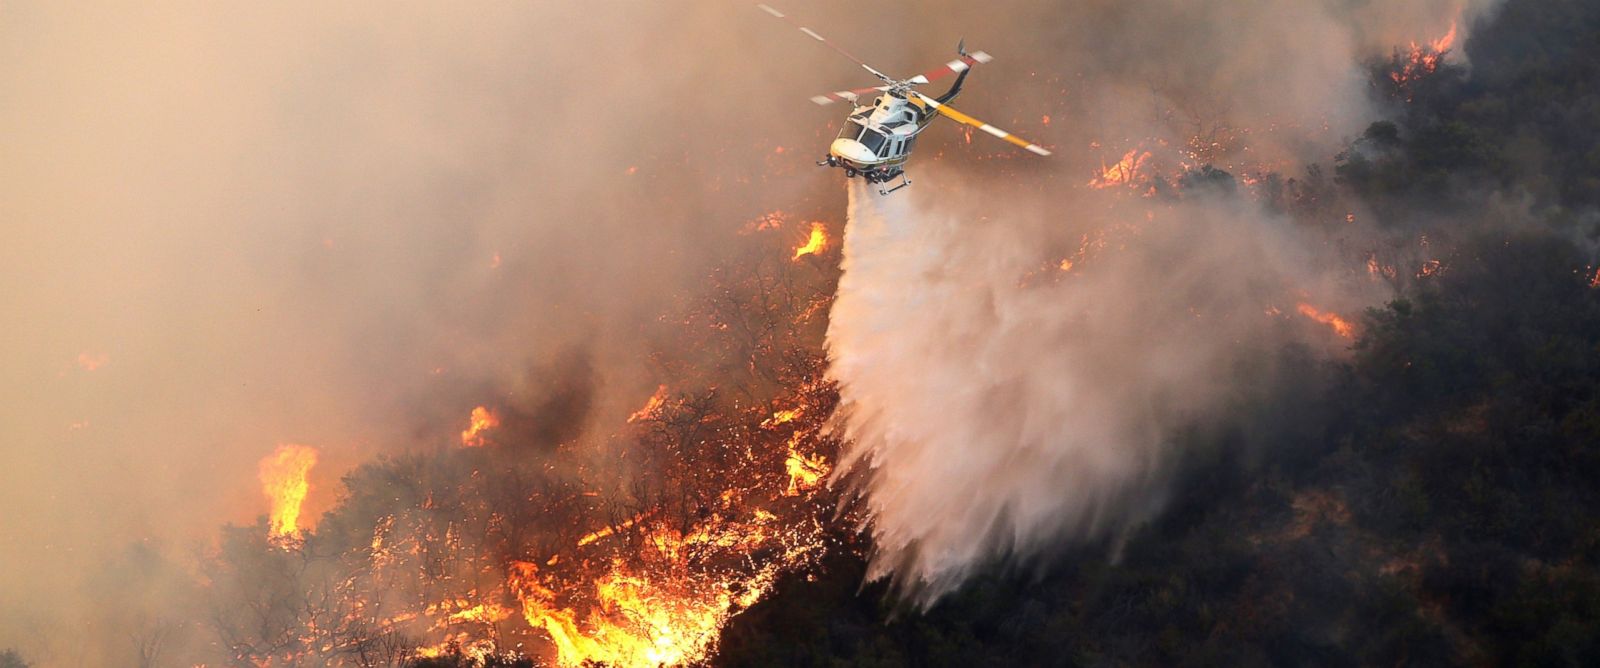 http://a.abcnews.go.com/images/US/EPA_calabasas_wildfire_1_jt_160605_12x5_1600.jpg